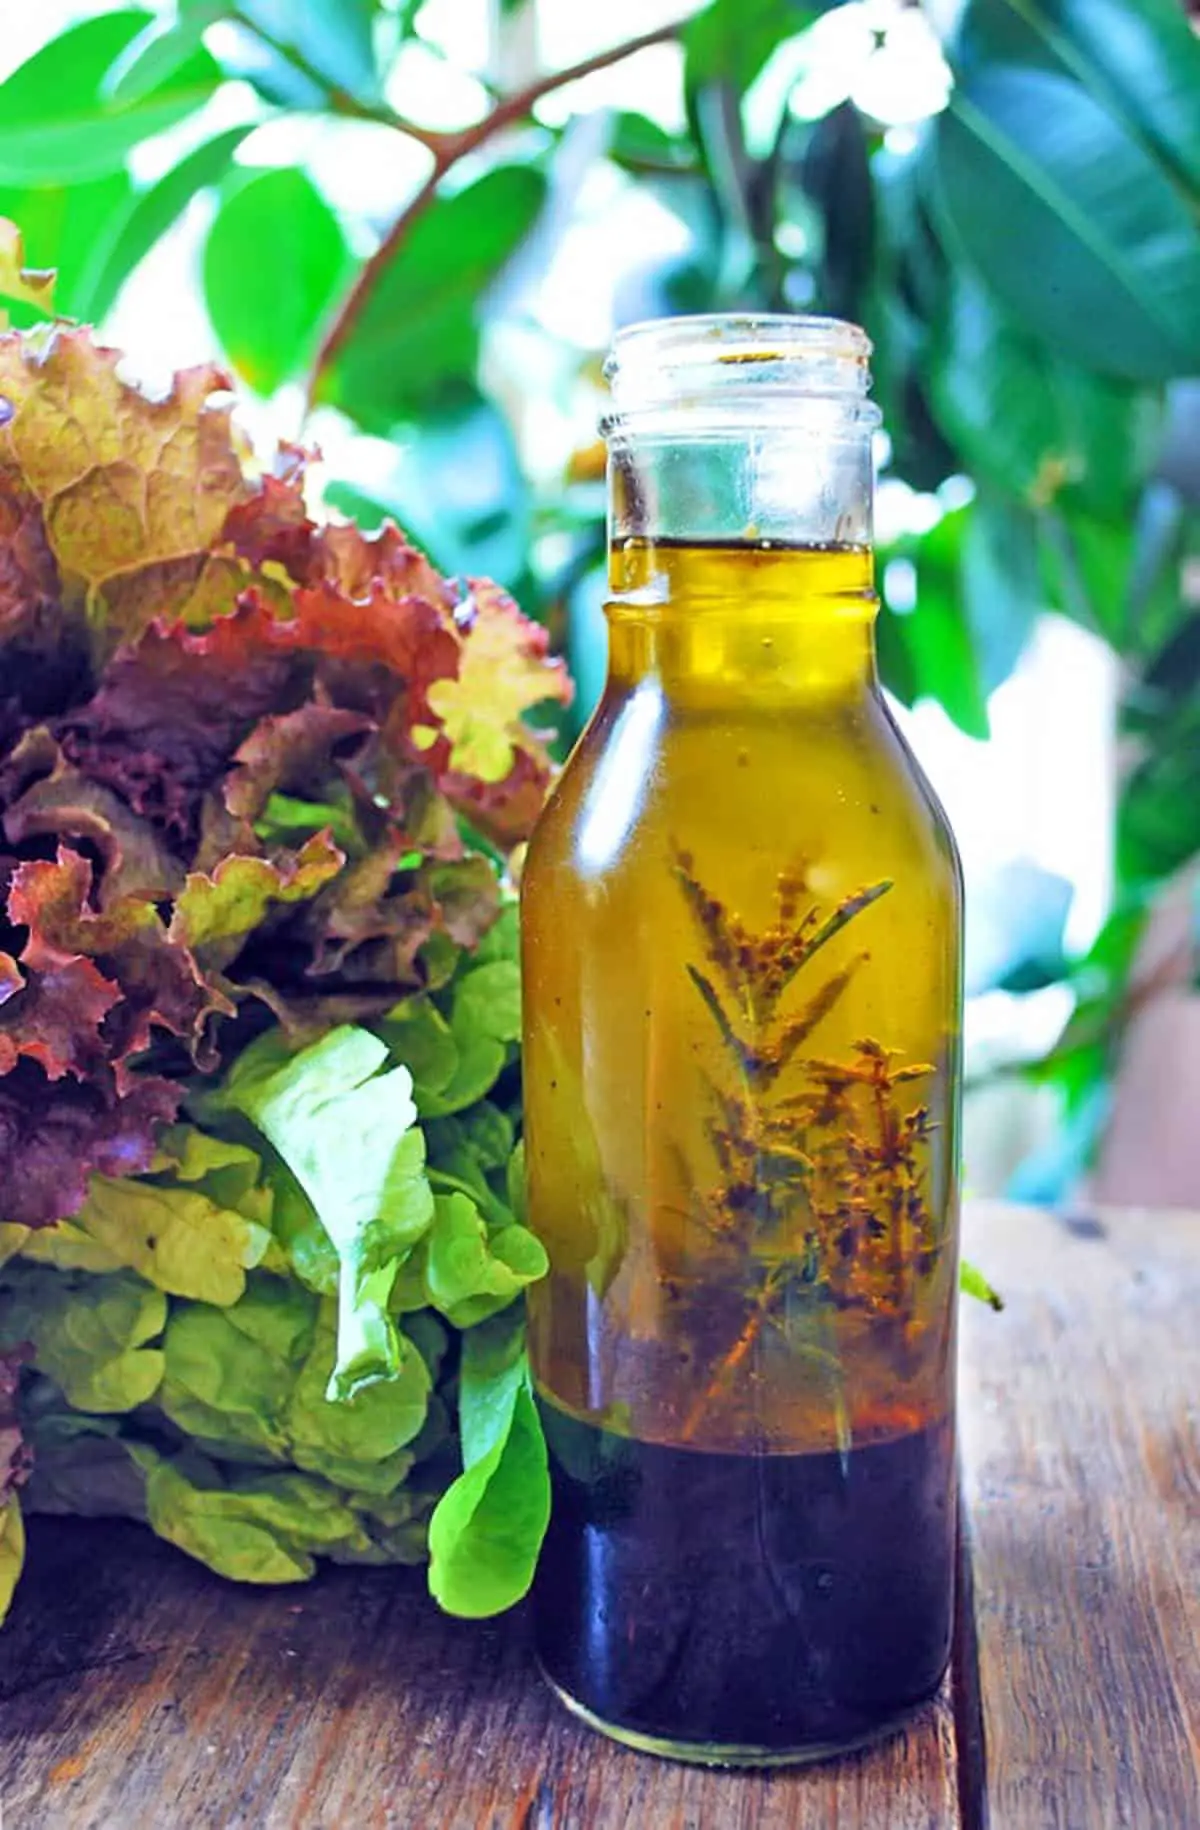 vinagreta con hierbas en una botella de vidrio